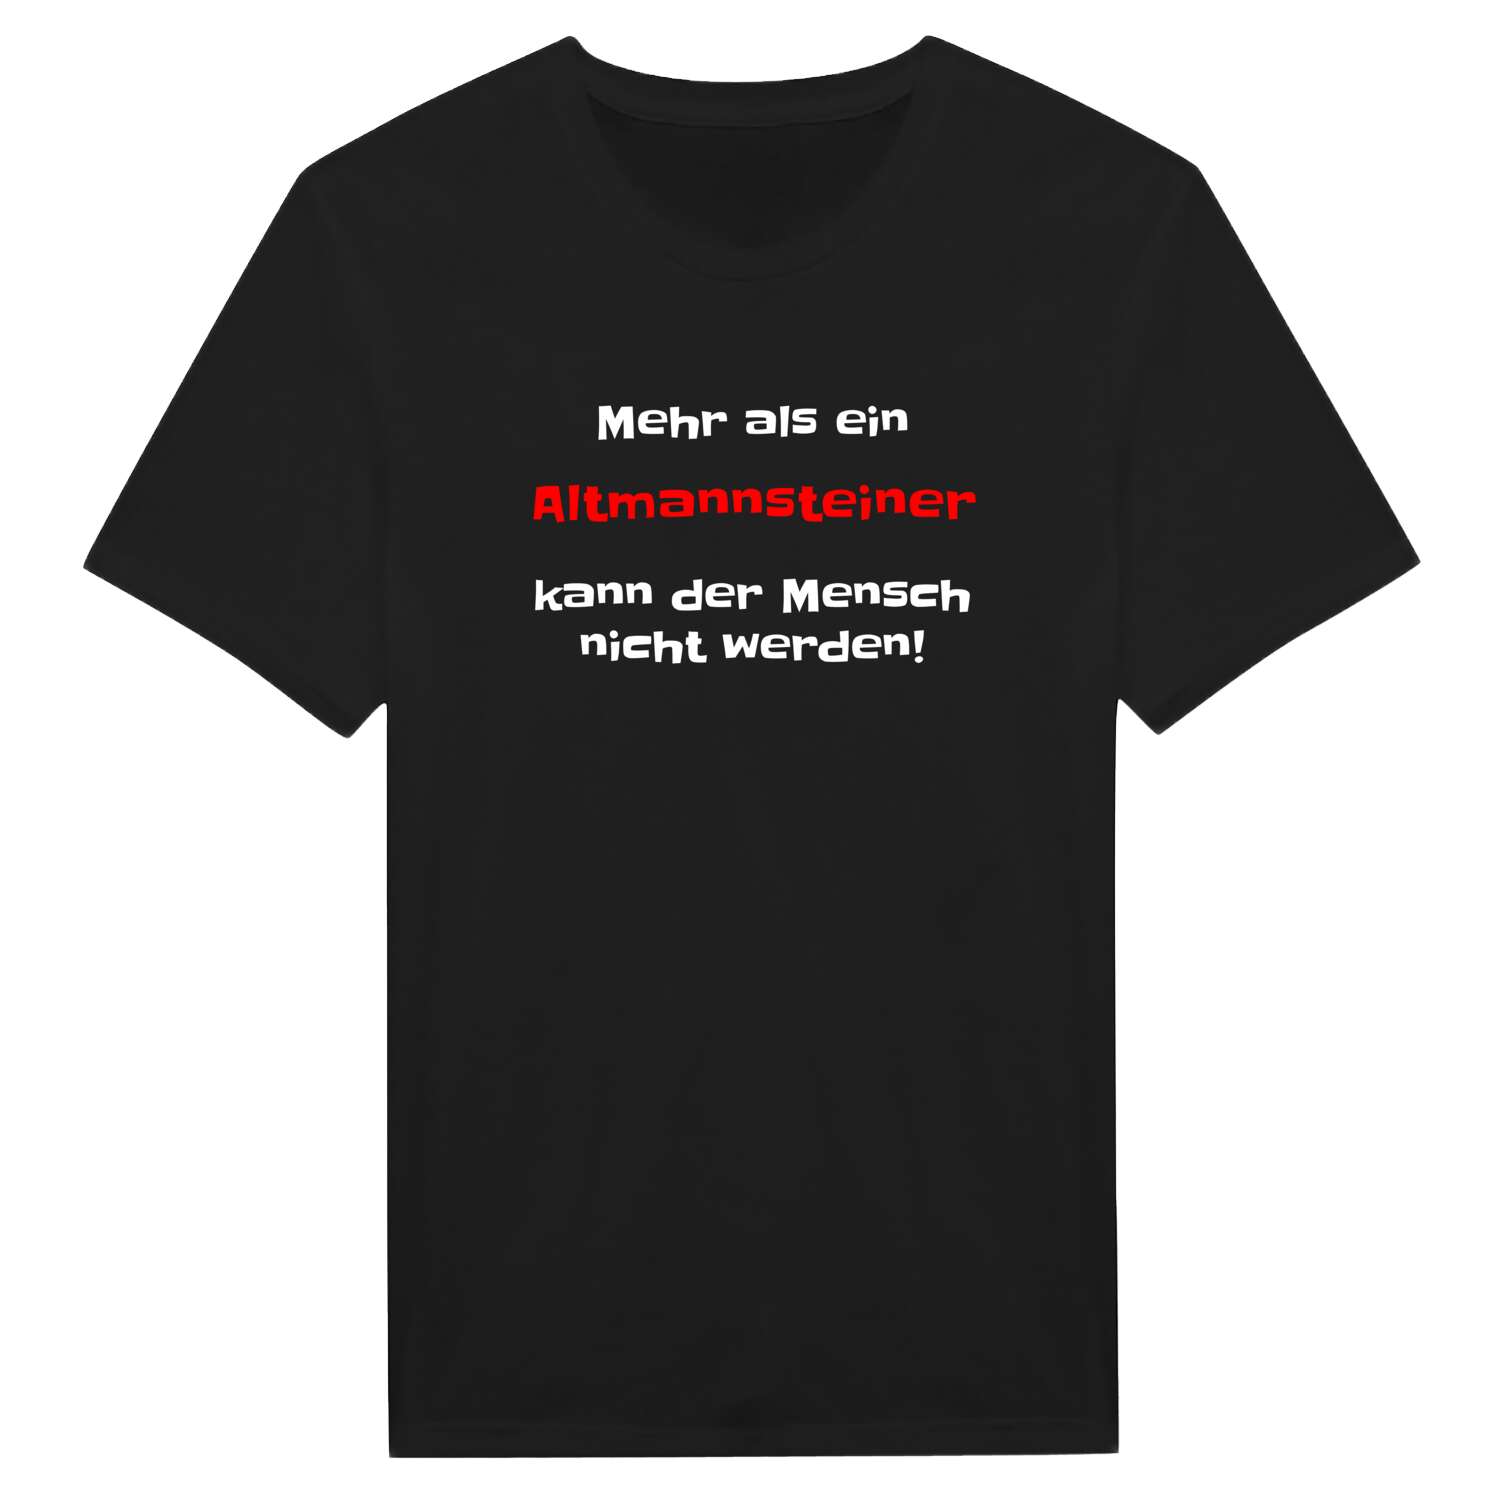 Altmannstein T-Shirt »Mehr als ein«